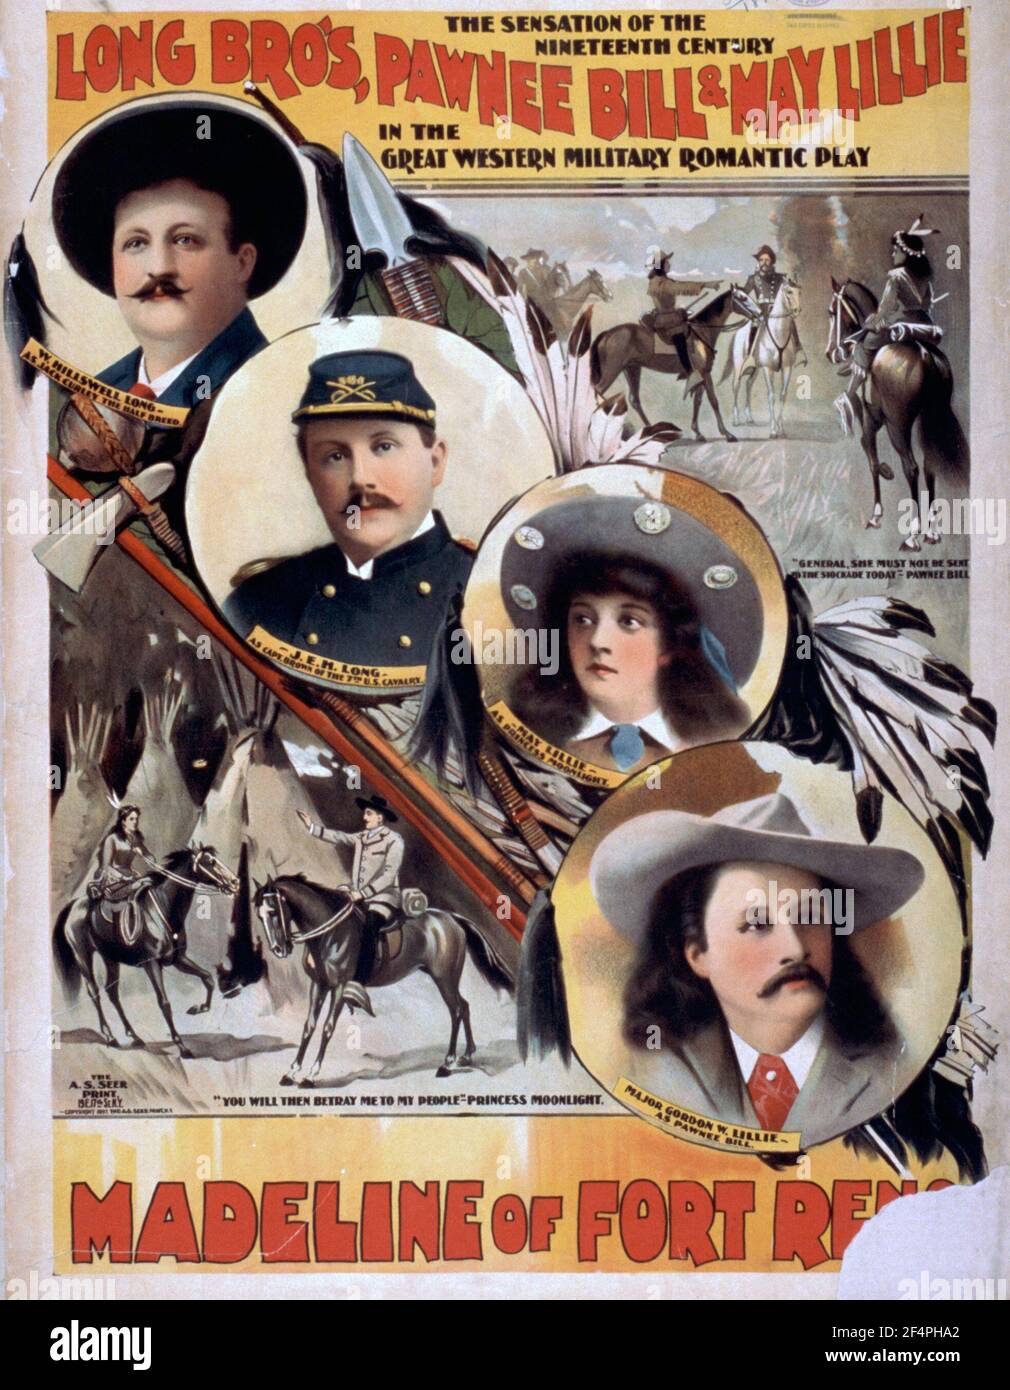 Long Bro's, Pawnee Bill et May Lillie dans la grande pièce militaire romantique de l'Ouest, Madeline de fort Reno la sensation du XIXe siècle - 1897 Banque D'Images